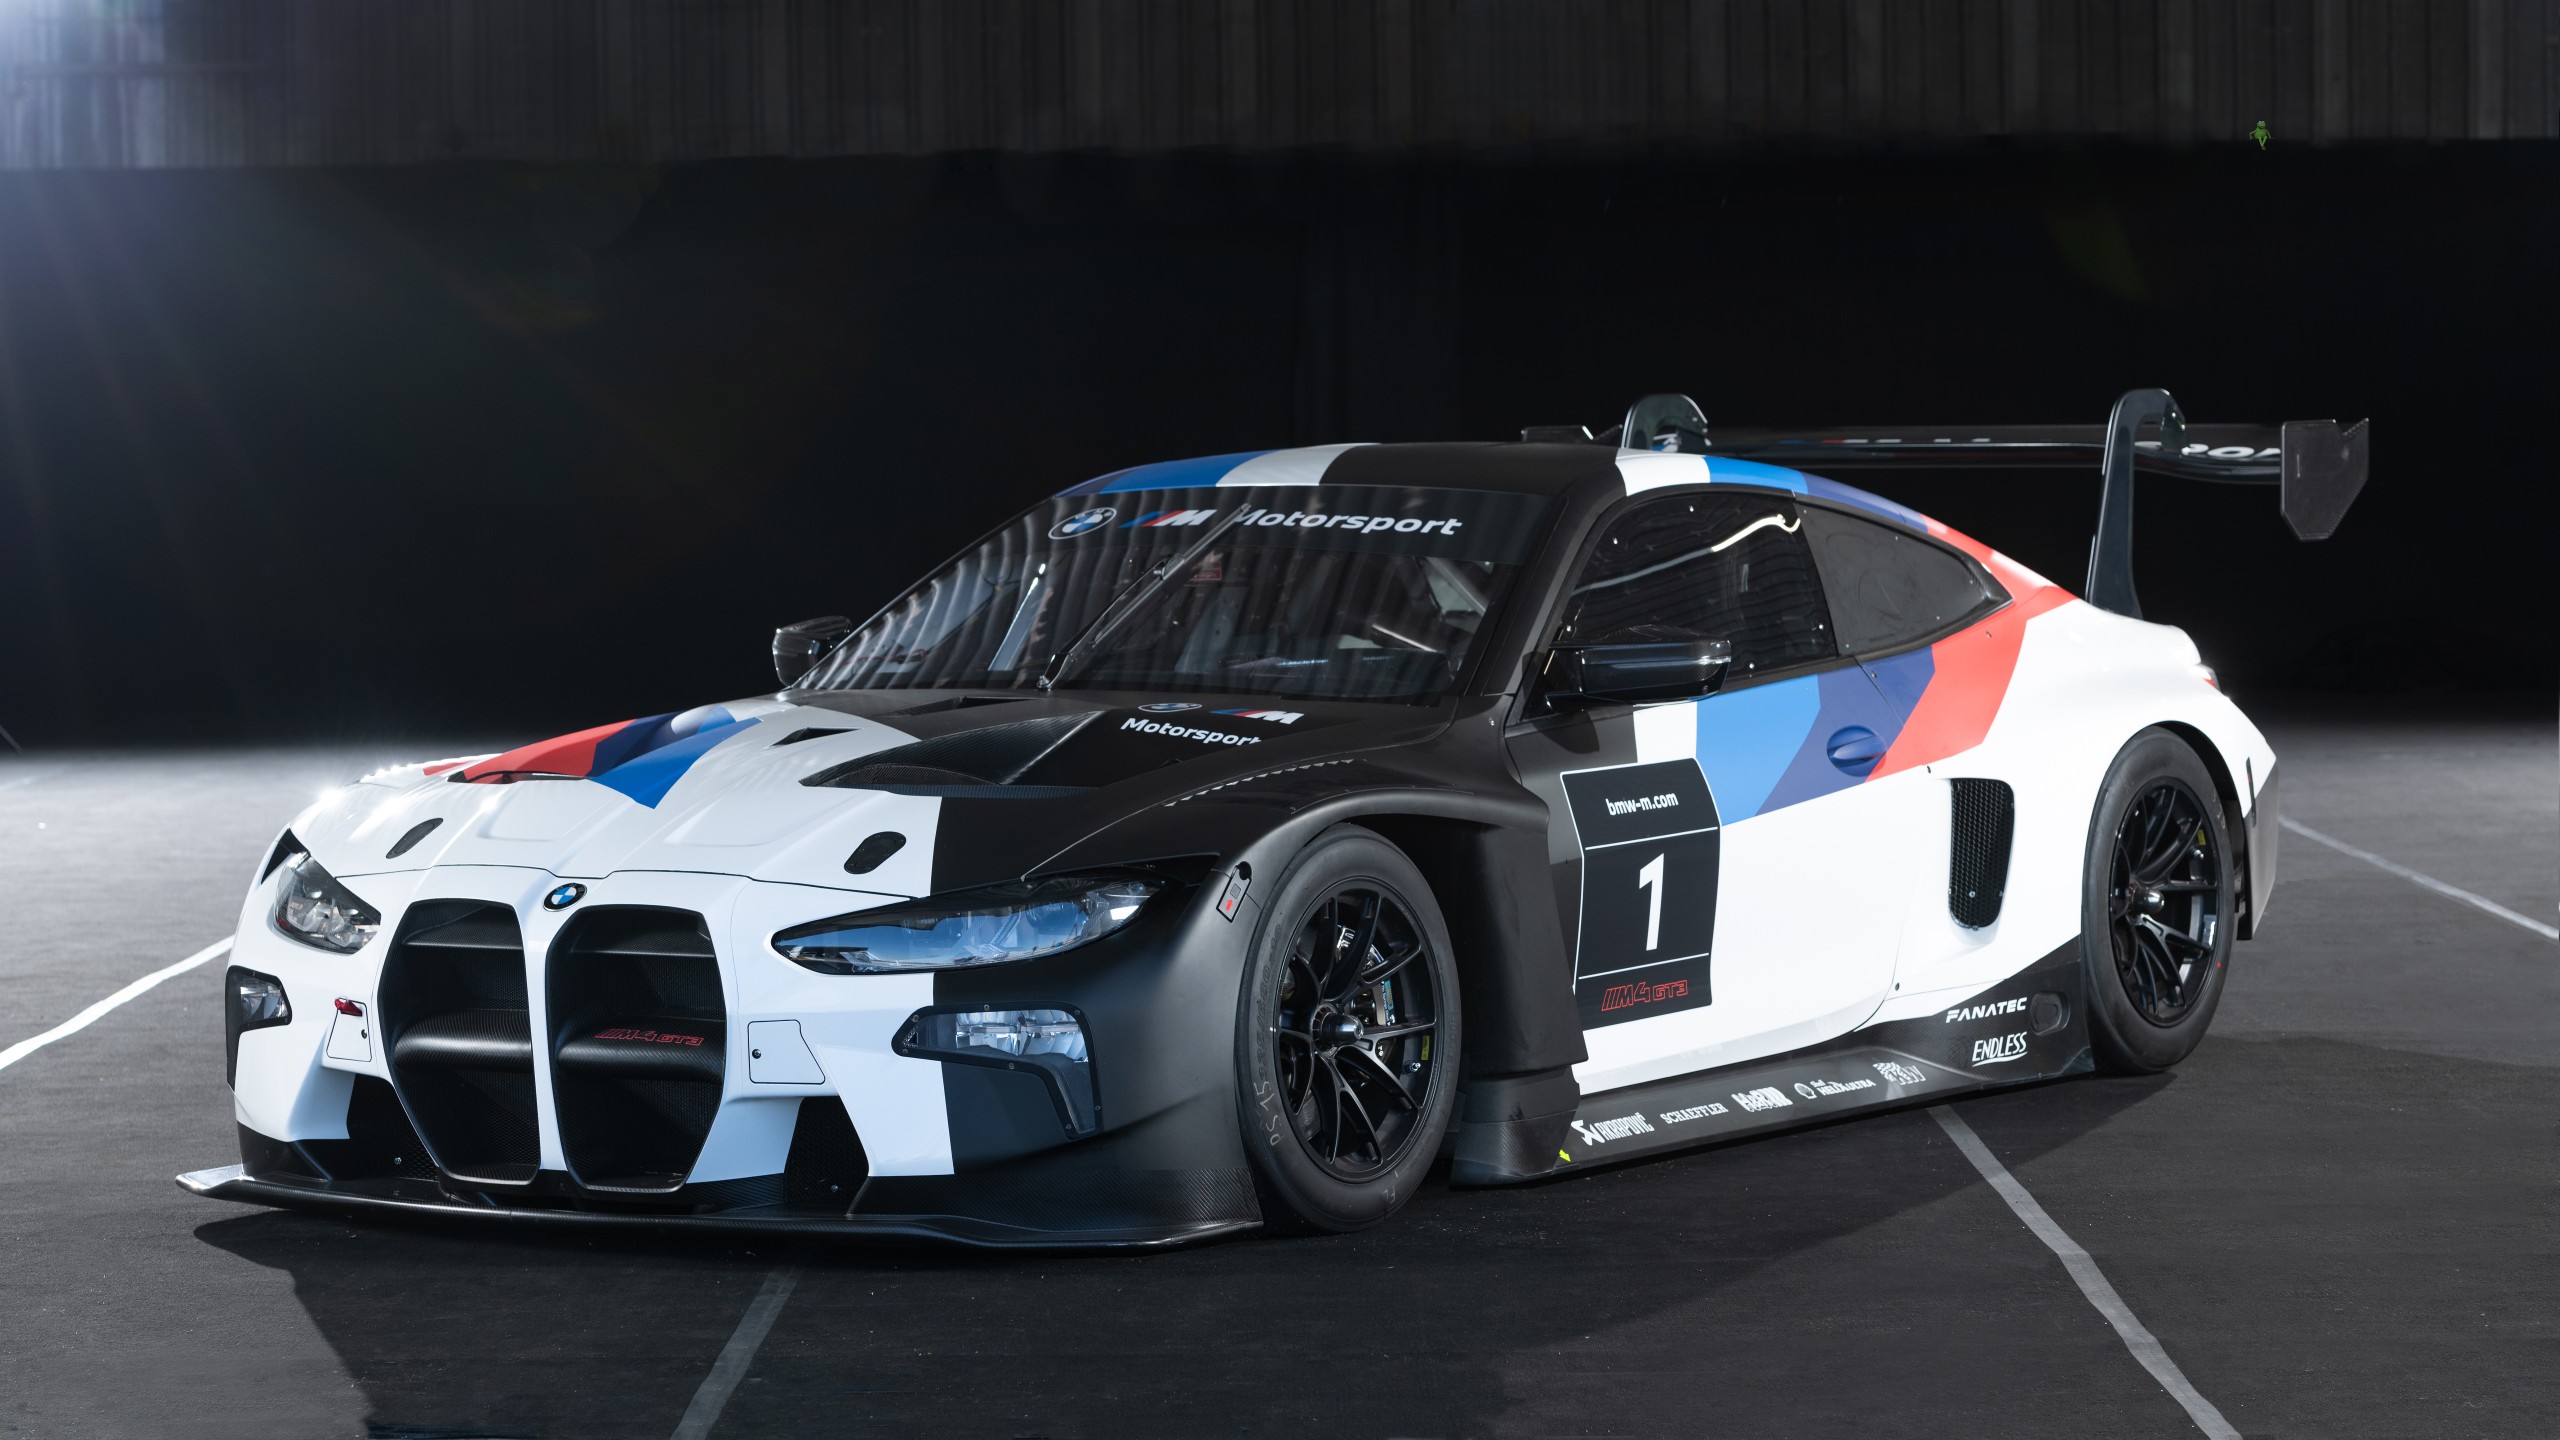 Khám phá sức mạnh của chiếc xe đua BMW M4 GT3 2021 với bức ảnh hình nền đầy mê hoặc này. Với công nghệ chế tạo tiên tiến, chiếc xe này sẽ mang đến cho bạn một trải nghiệm đua xe đầy phấn khích và nhiều cảm hứng.